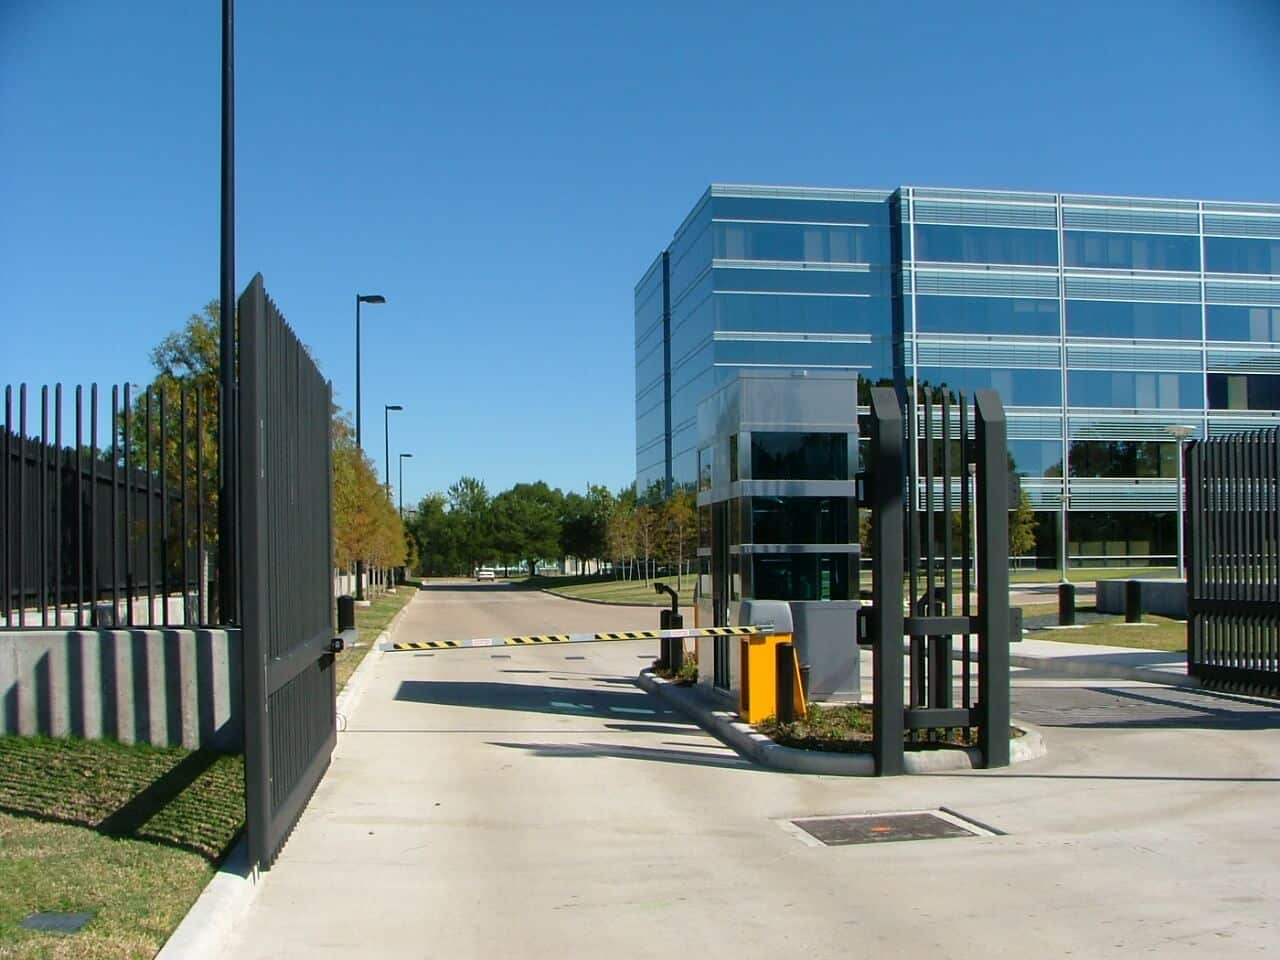 CITGO Petroleum – North American Headquarters